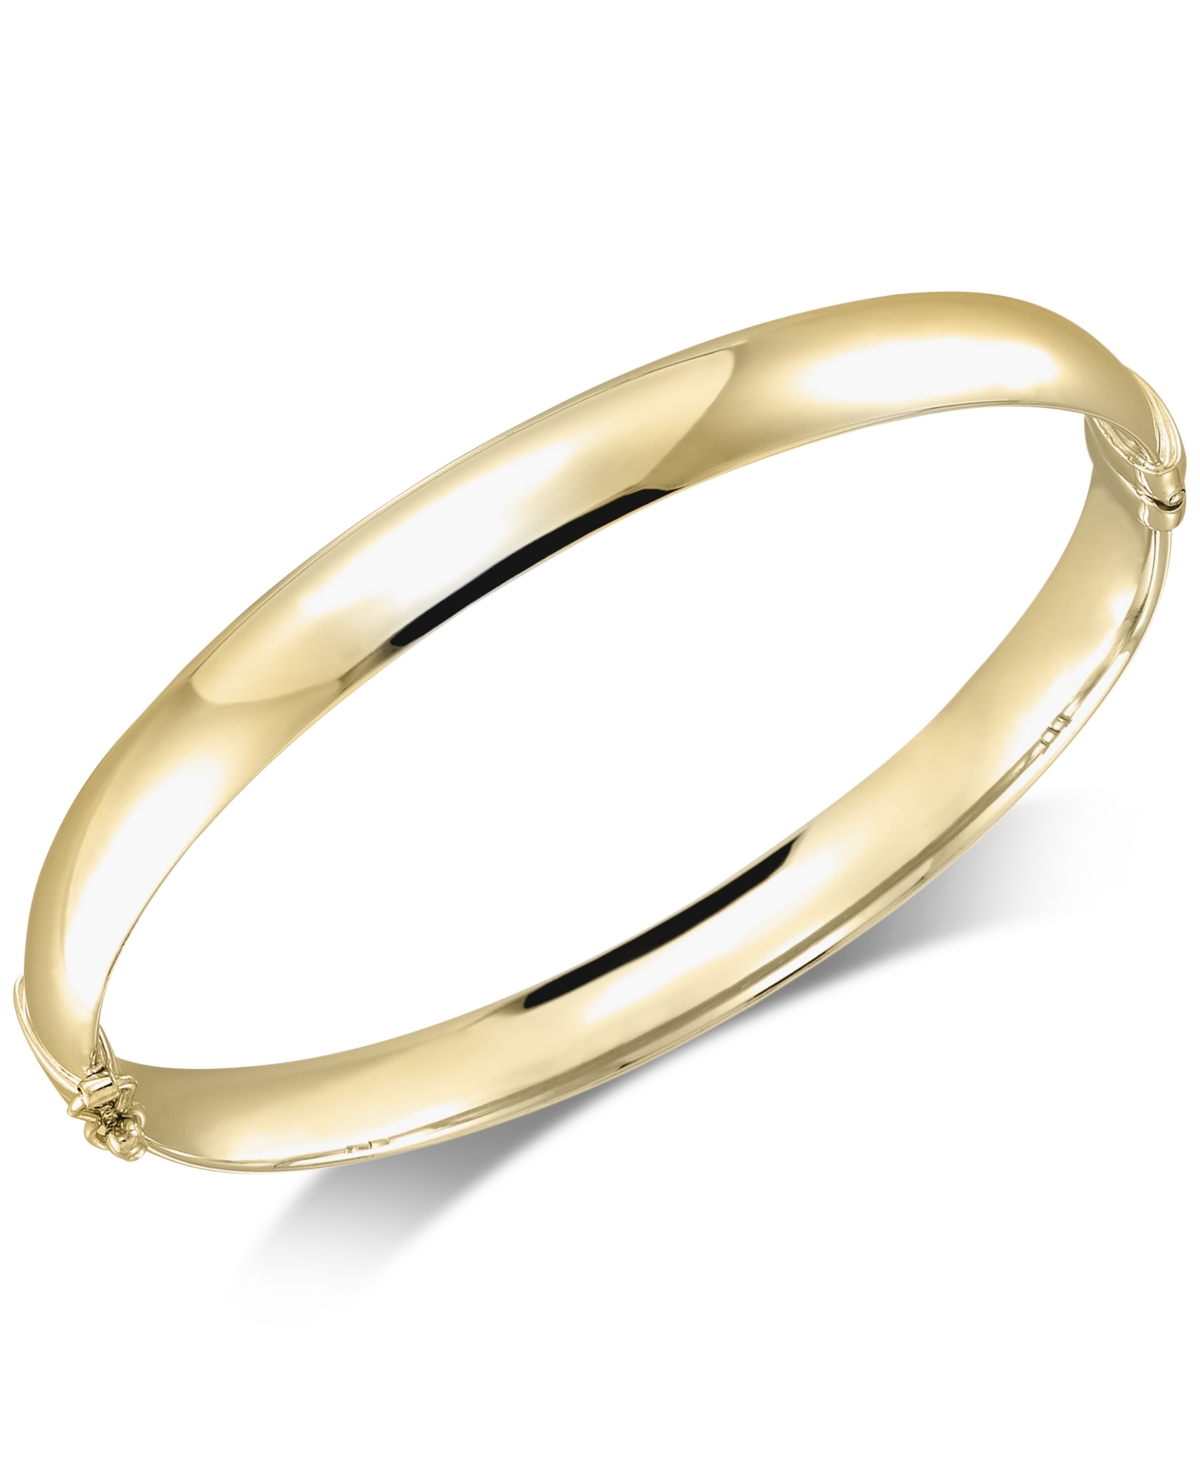 Polished Bangle Bracelet - White Gold